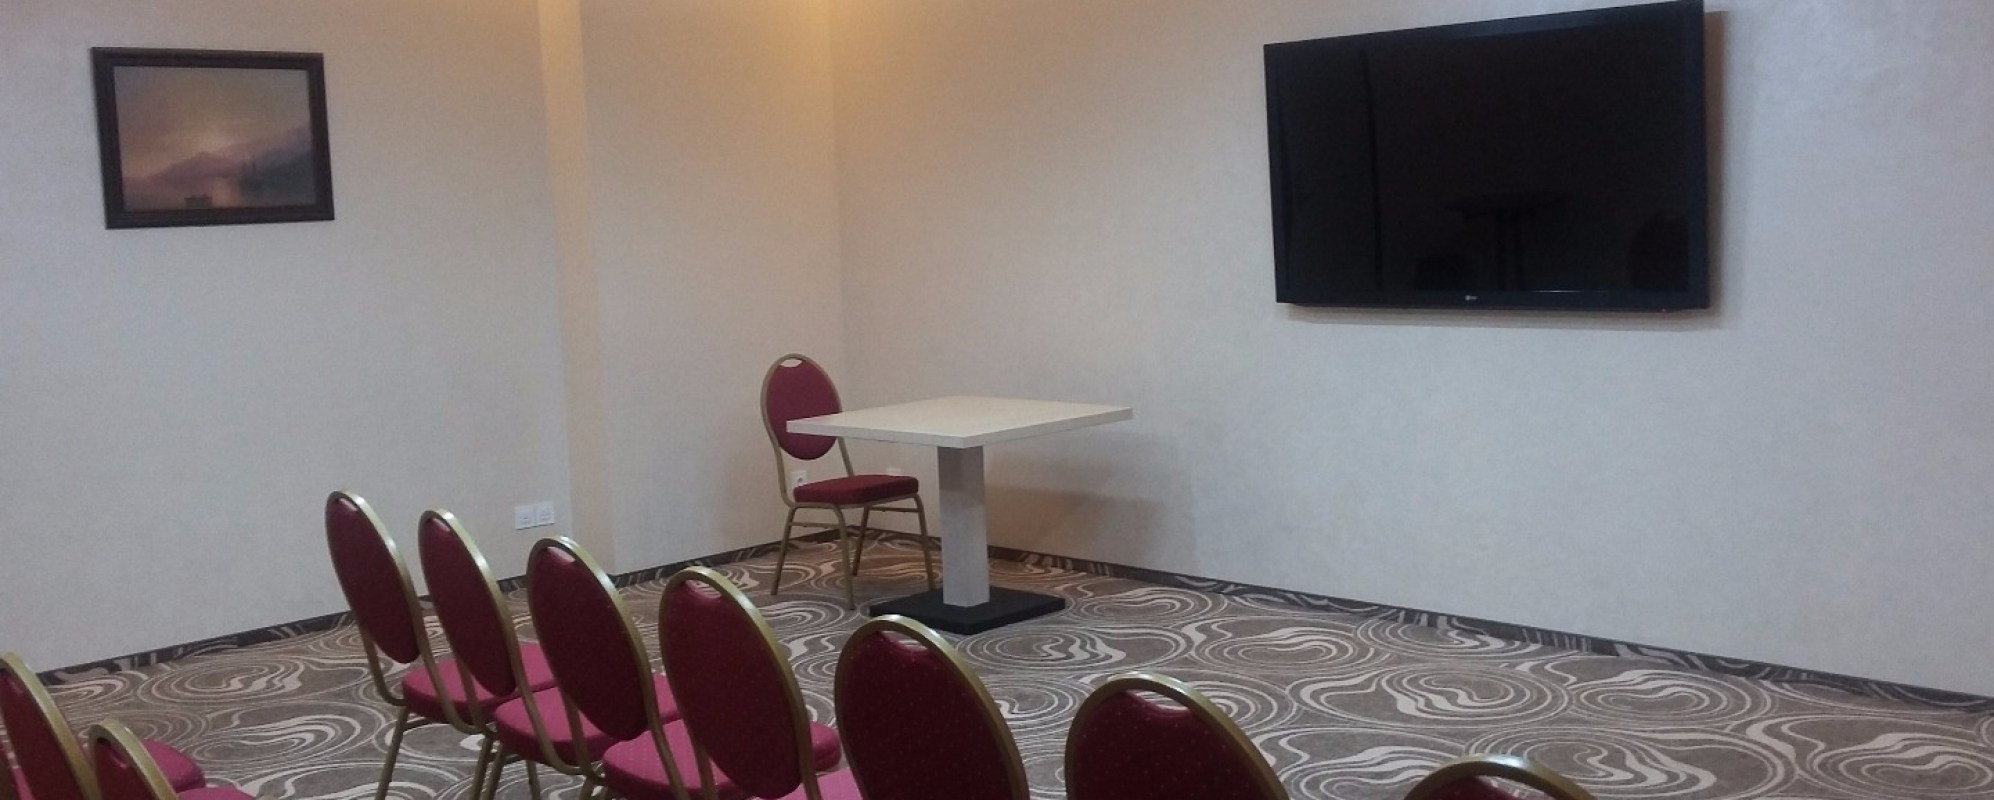 Фотографии комнаты для переговоров Переговорная комната отеля Адмирал